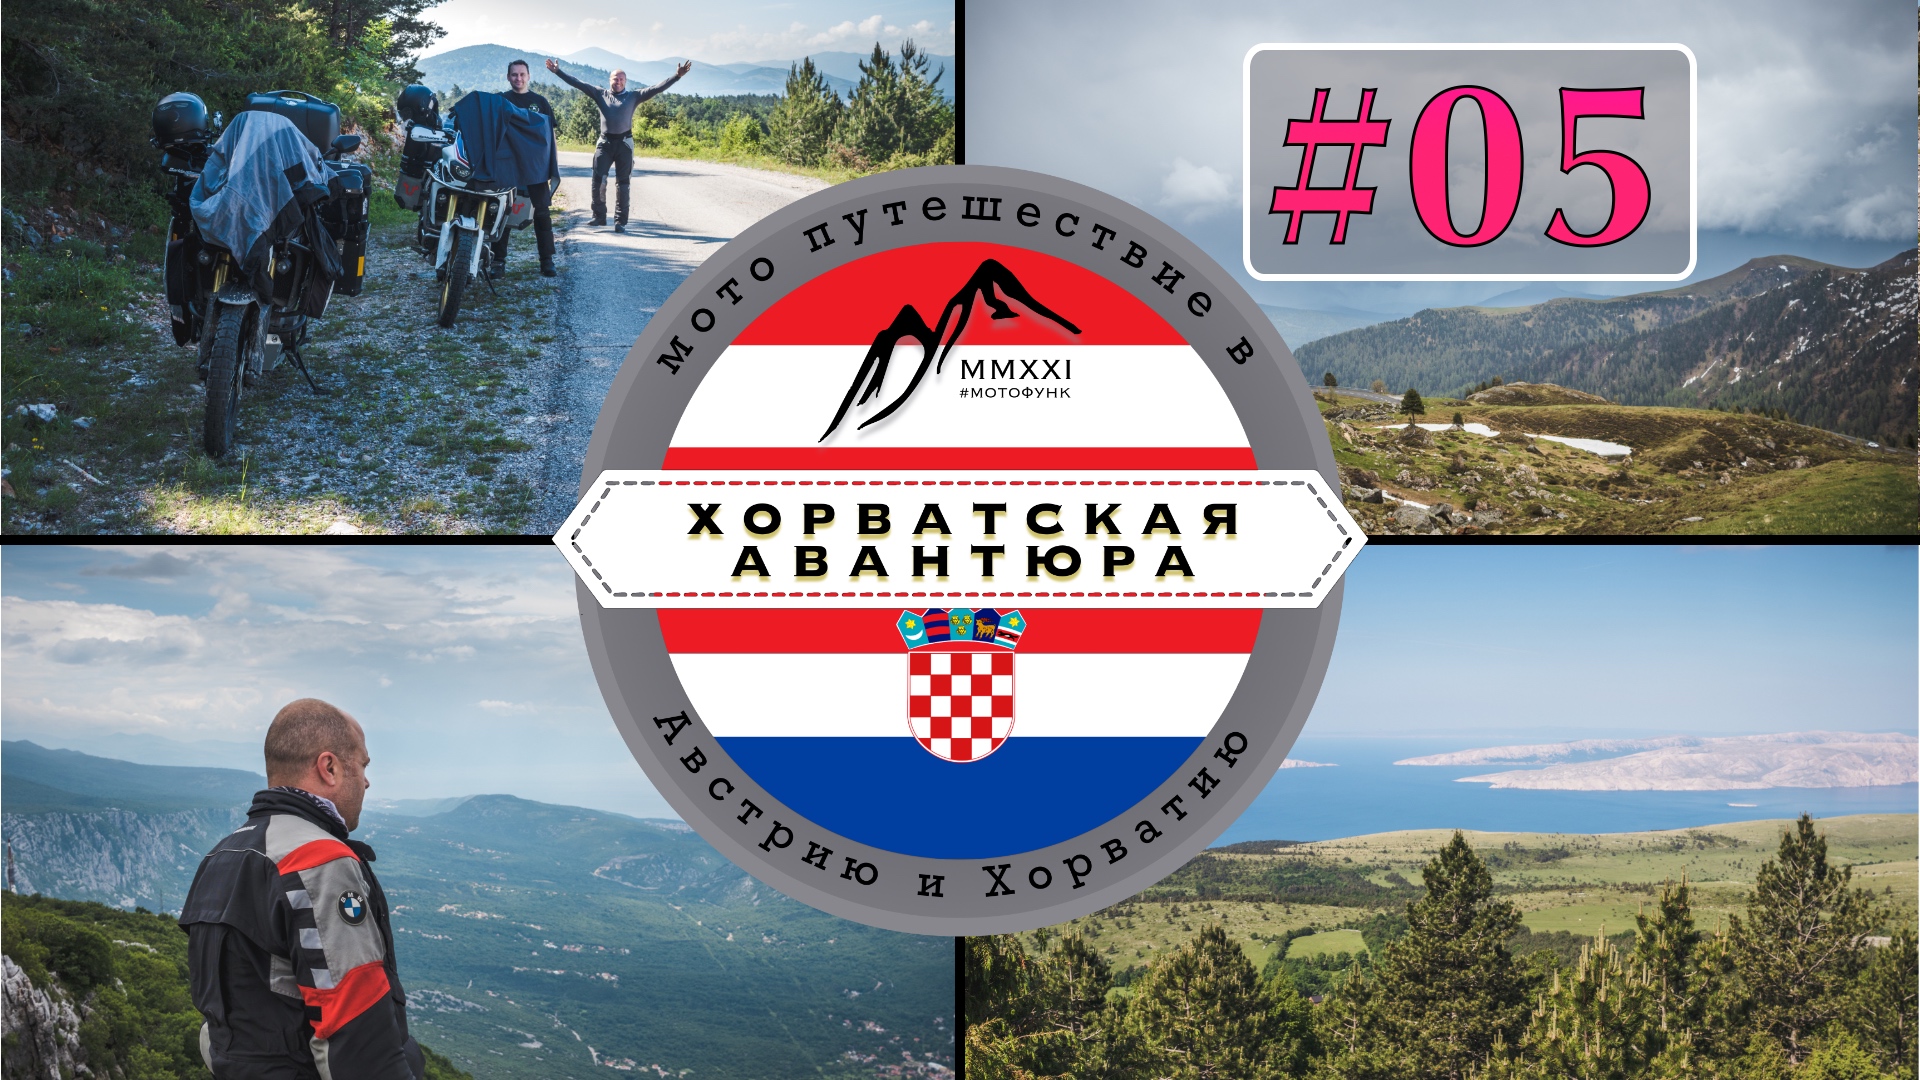 ⓪⑤ Гросглокнер, Альпы. Хорватская авантюра. Мото путешествие в Австрию и в Хорватию #CRF1000L